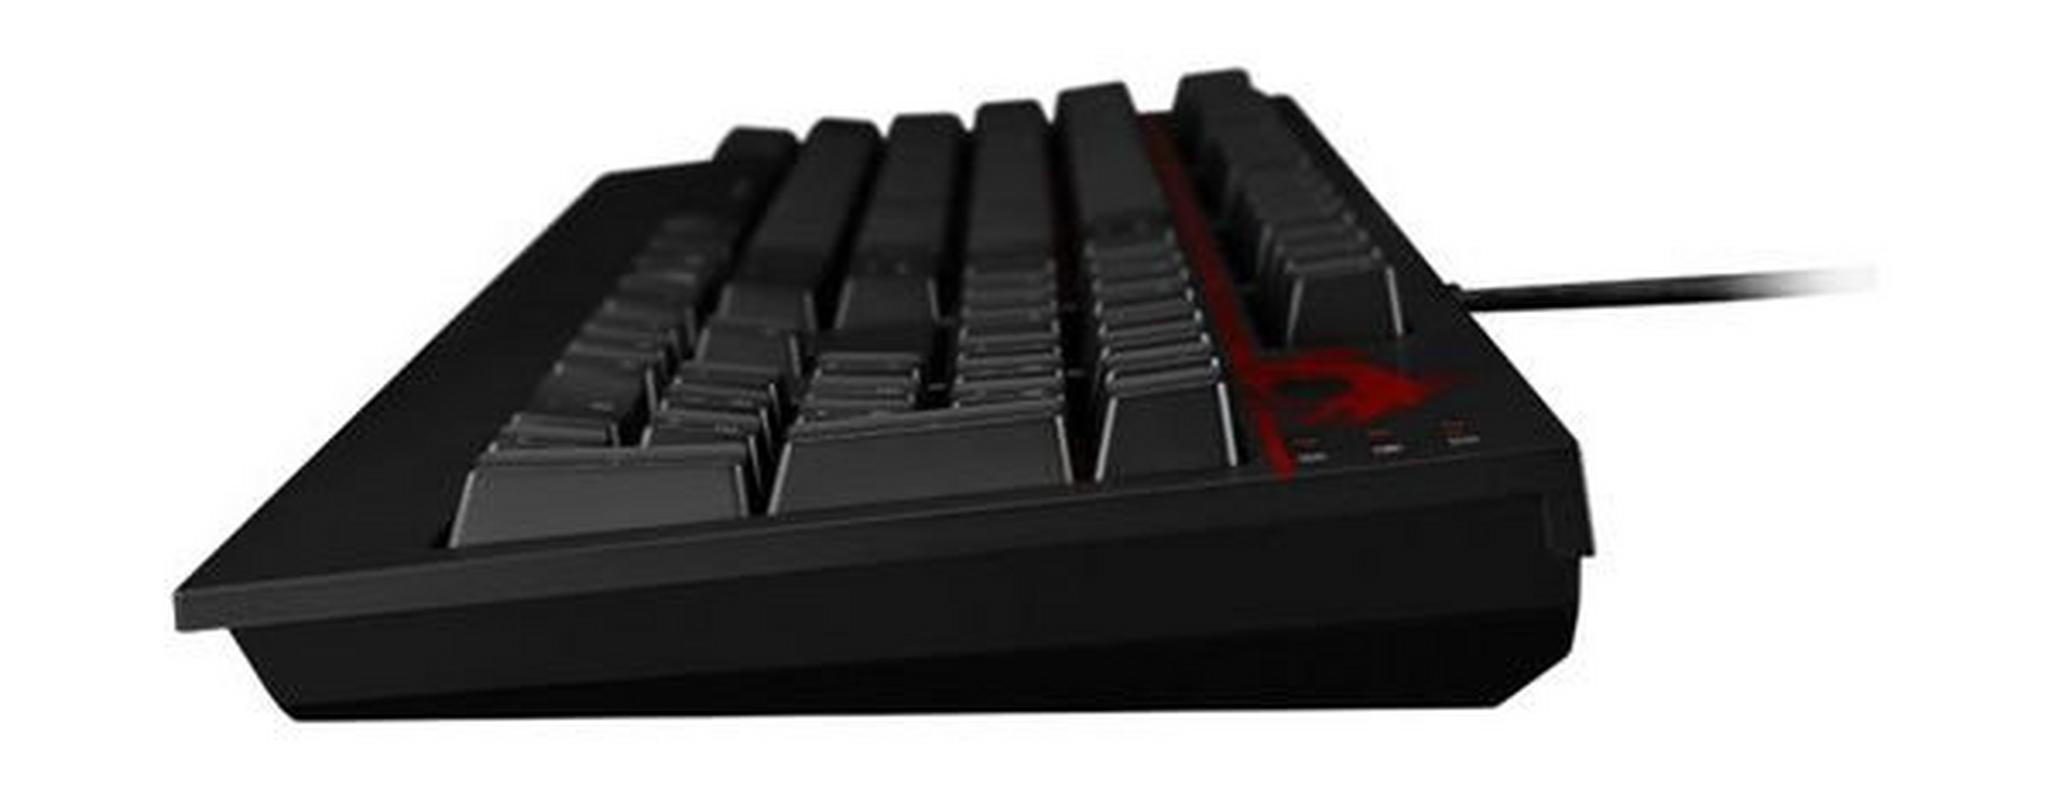 لوحة مفاتيح ألعاب ميكانيكية مع إضاءة خلفية من إم إس آي - أسود (GK-701)